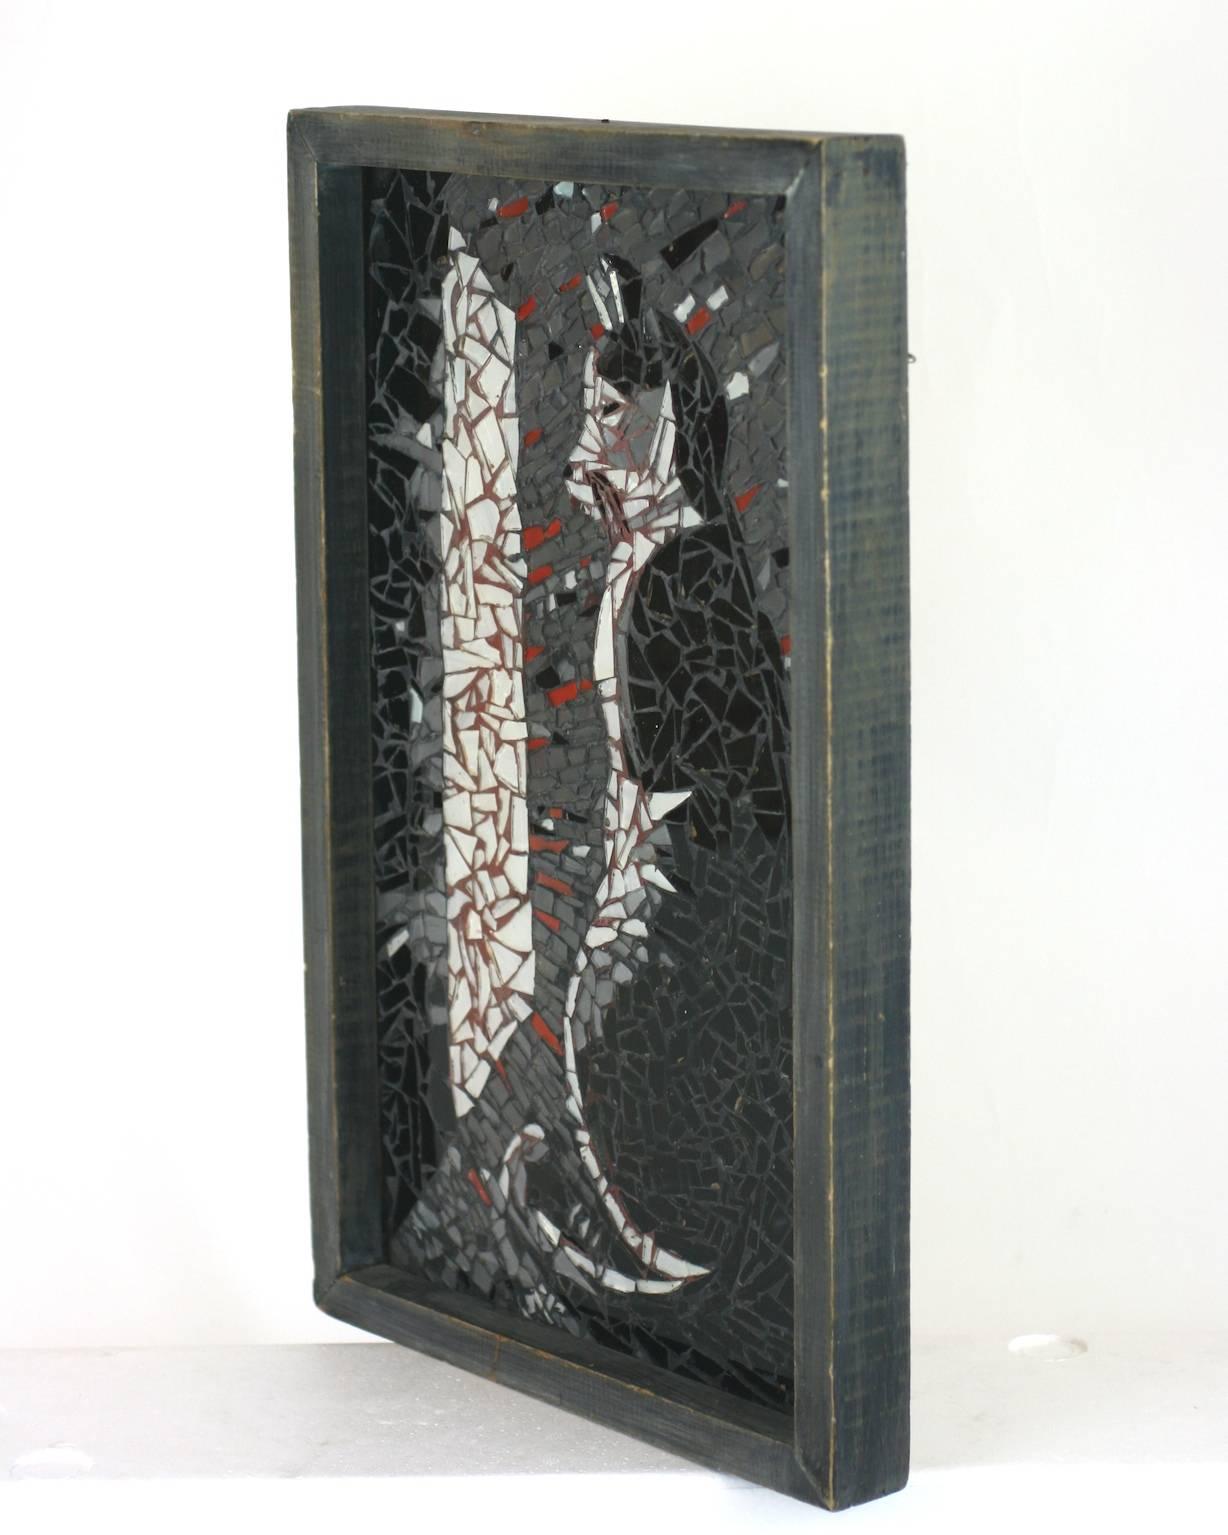 Charmante photo de chat en tesson de verre de style Folk Art dans un cadre en bois lavé gris fait à la main. Réalisée à la main avec des mosaïques d'éclats de verre, elle représente l'image d'un chat regardant par la fenêtre dans des nuances